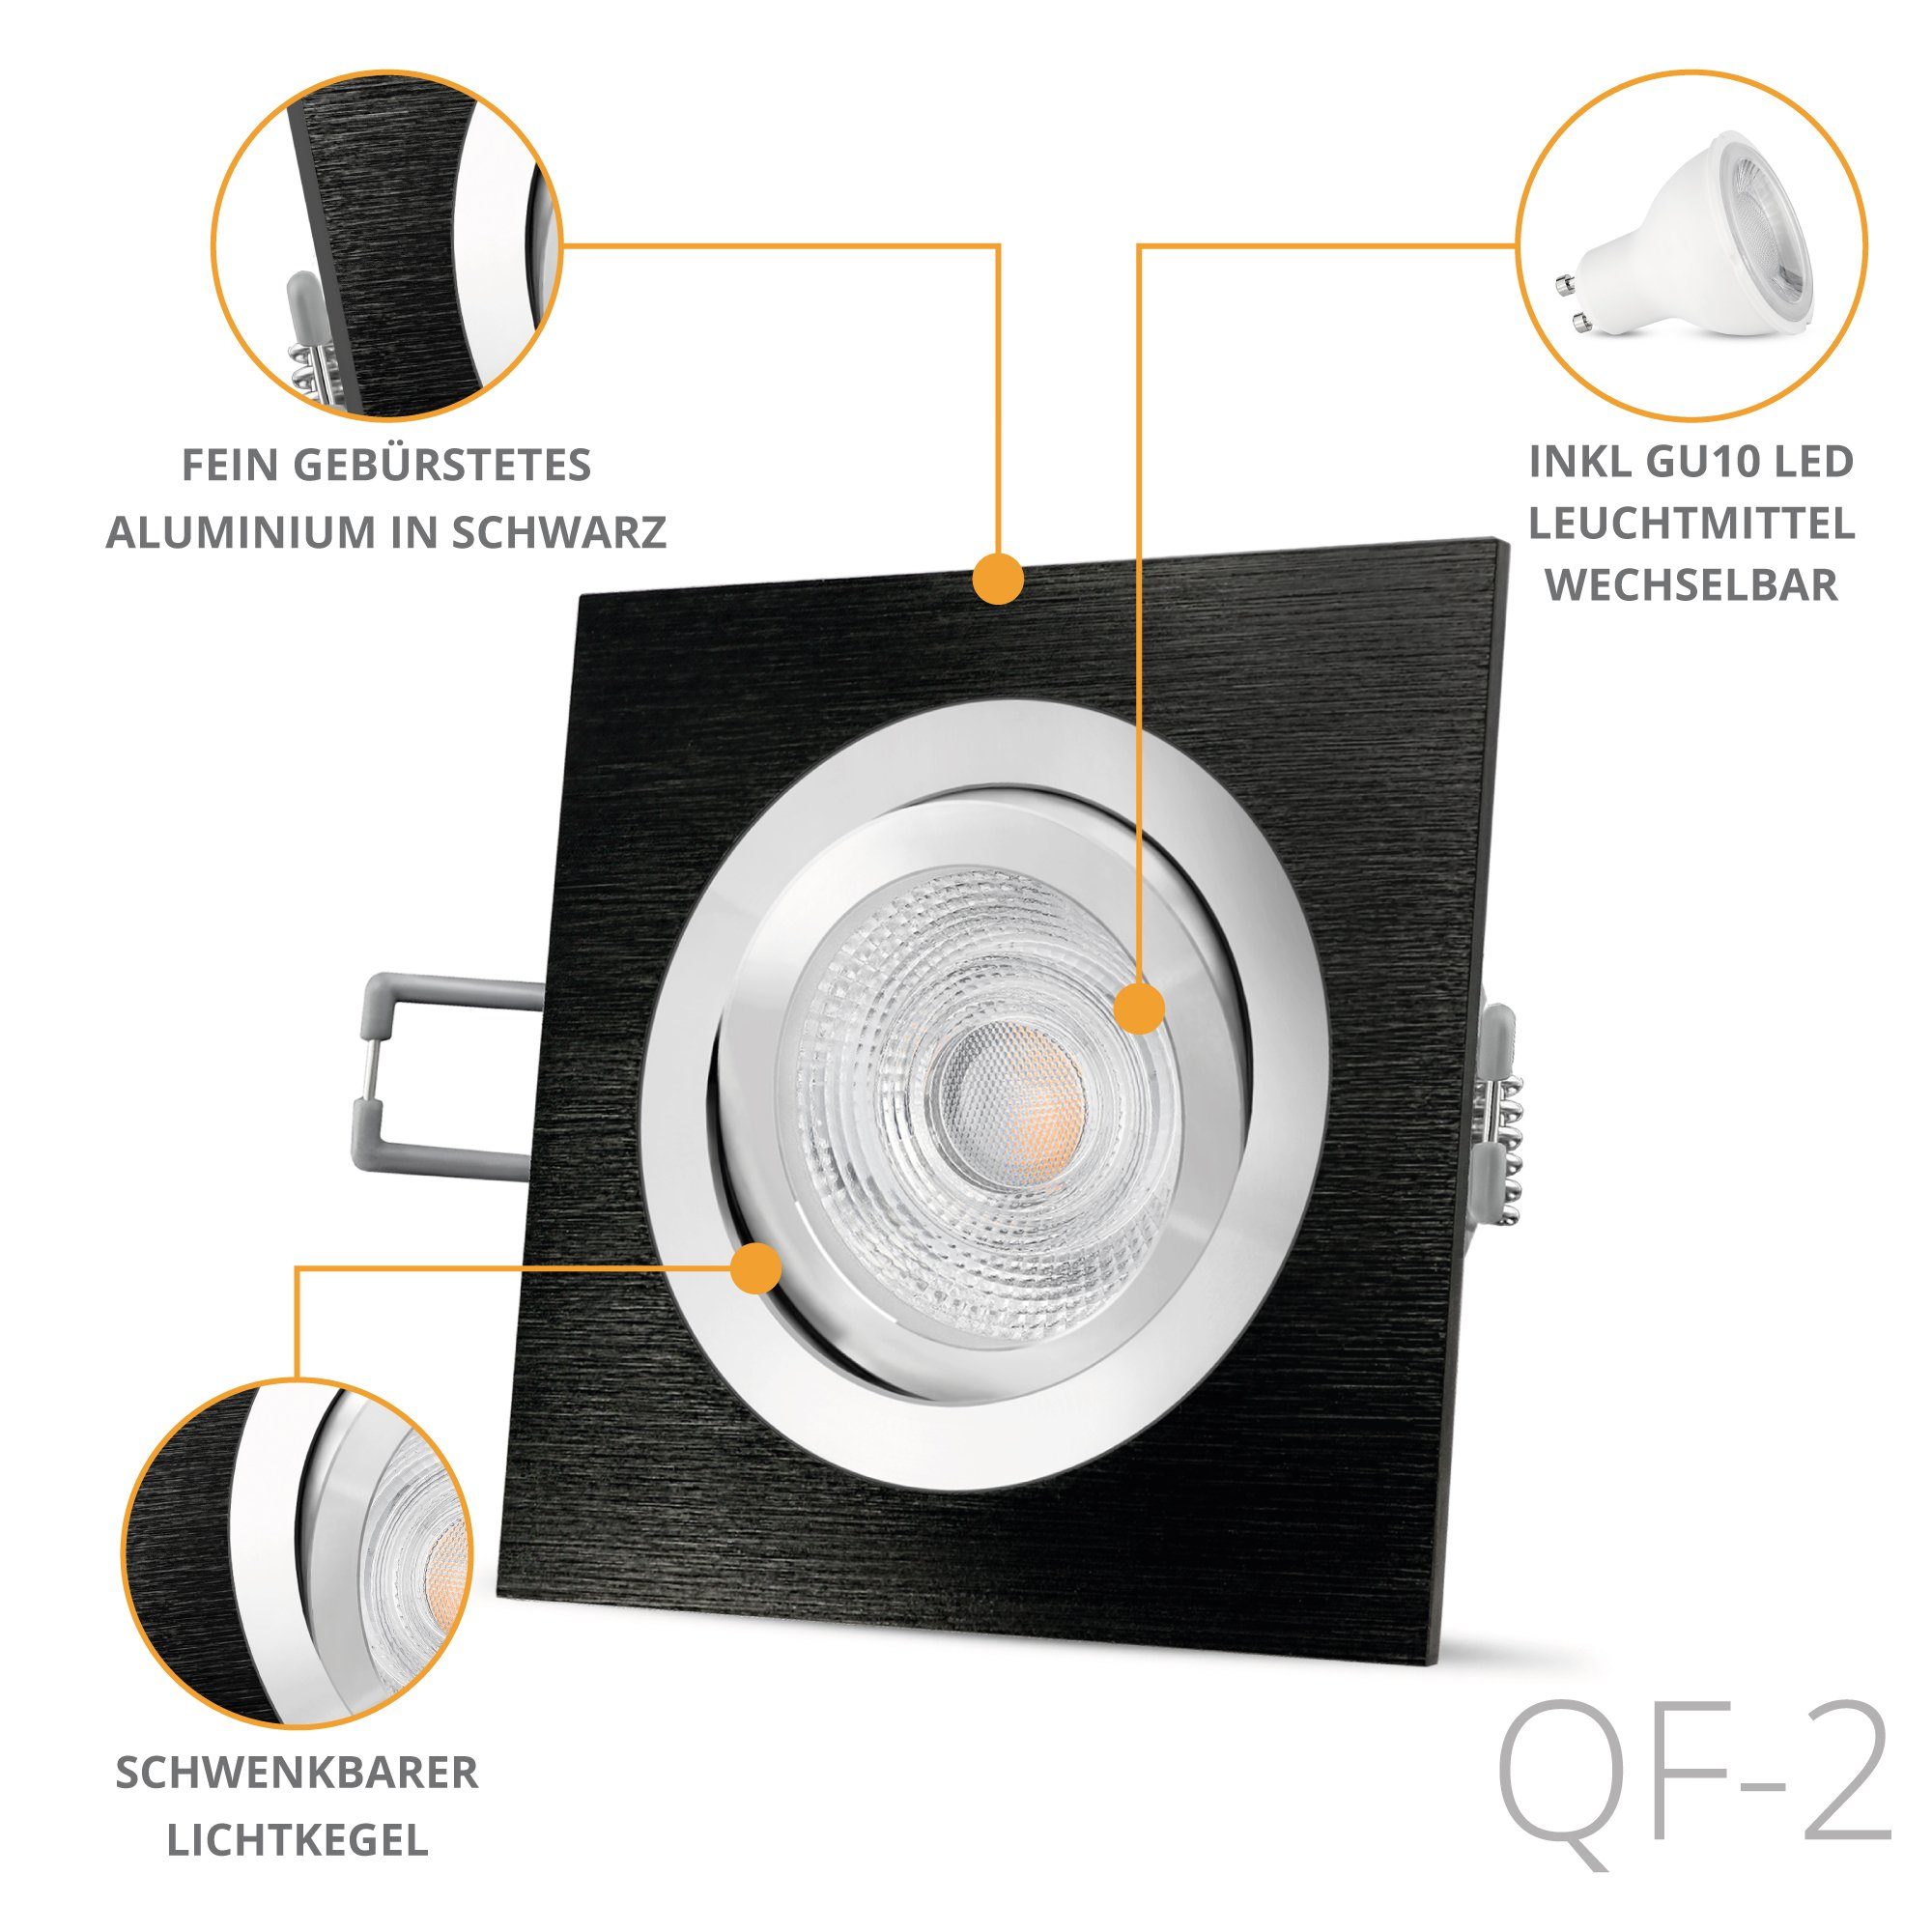 SSC-LUXon LED Warmweiß Einbauleuchte eckig mit schwenkbar Einbaustrahler LED QF-2 gebuerstet GU10, schwarz